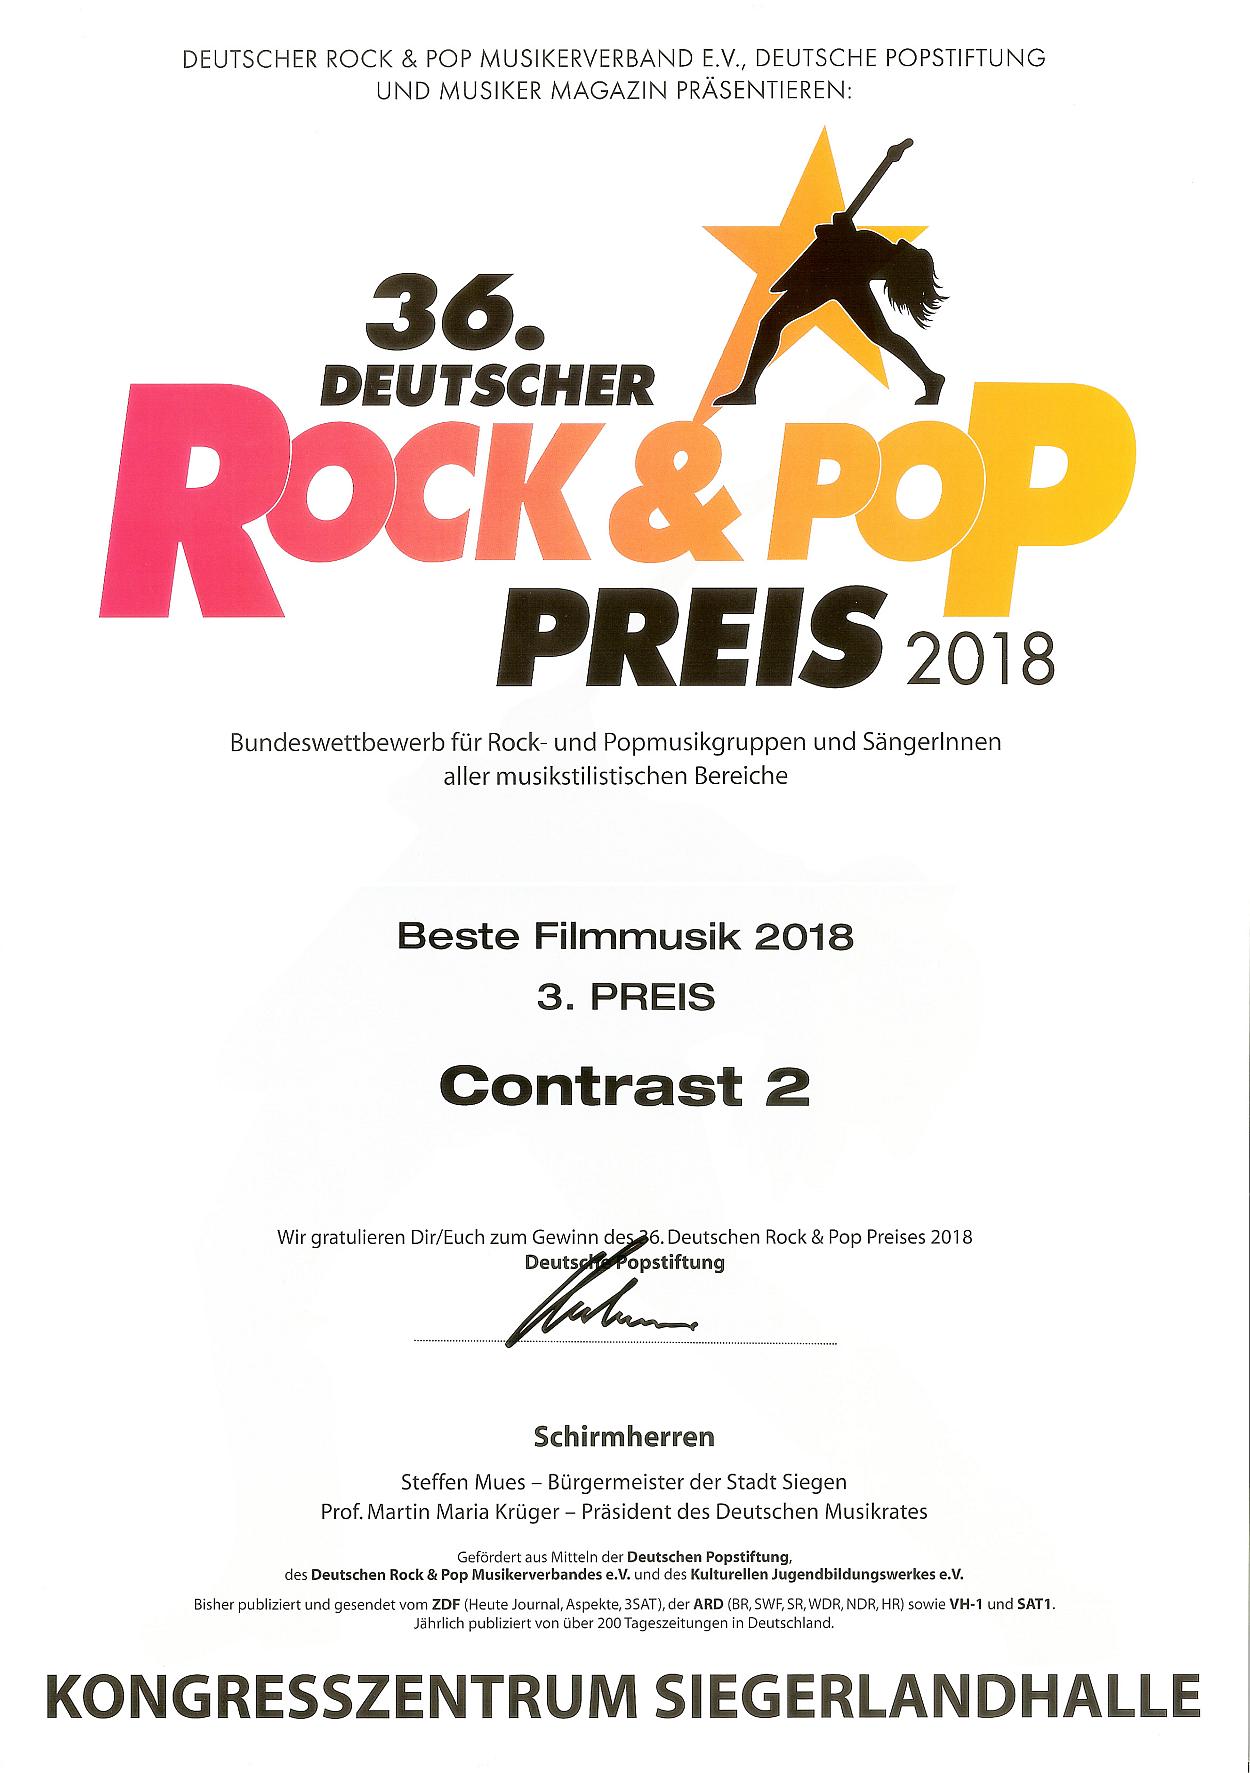 Urkunde vom Deutschen Rock & Pop Preis 2018 für den 3. Preis in der Kategorie 'Beste Filmmusik 2018' für meine Band Contrast2.